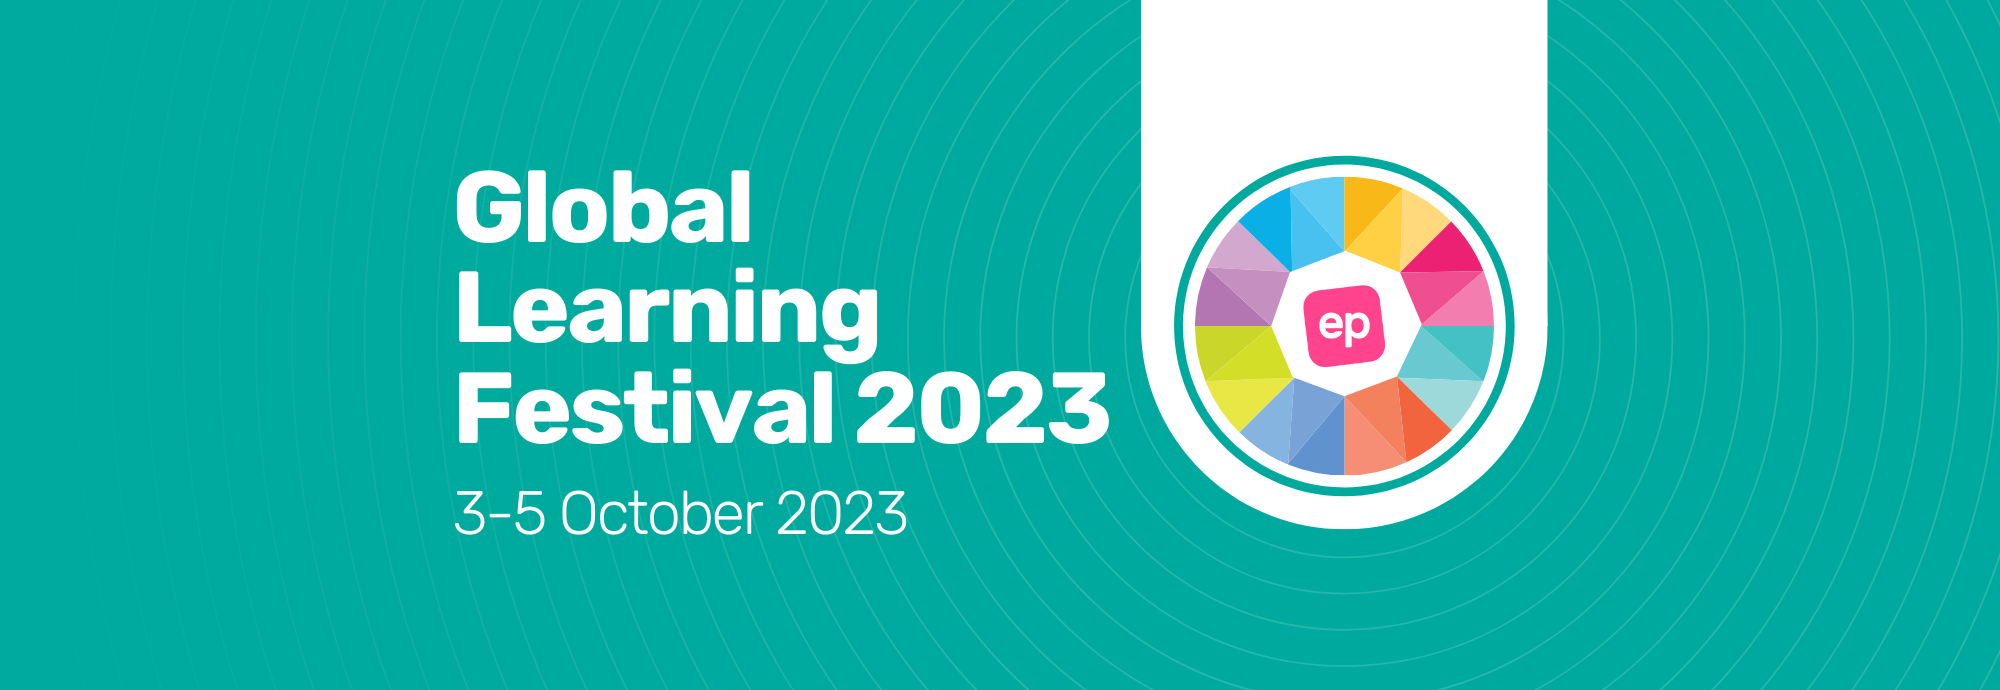 EP Global Learning Festival 2023